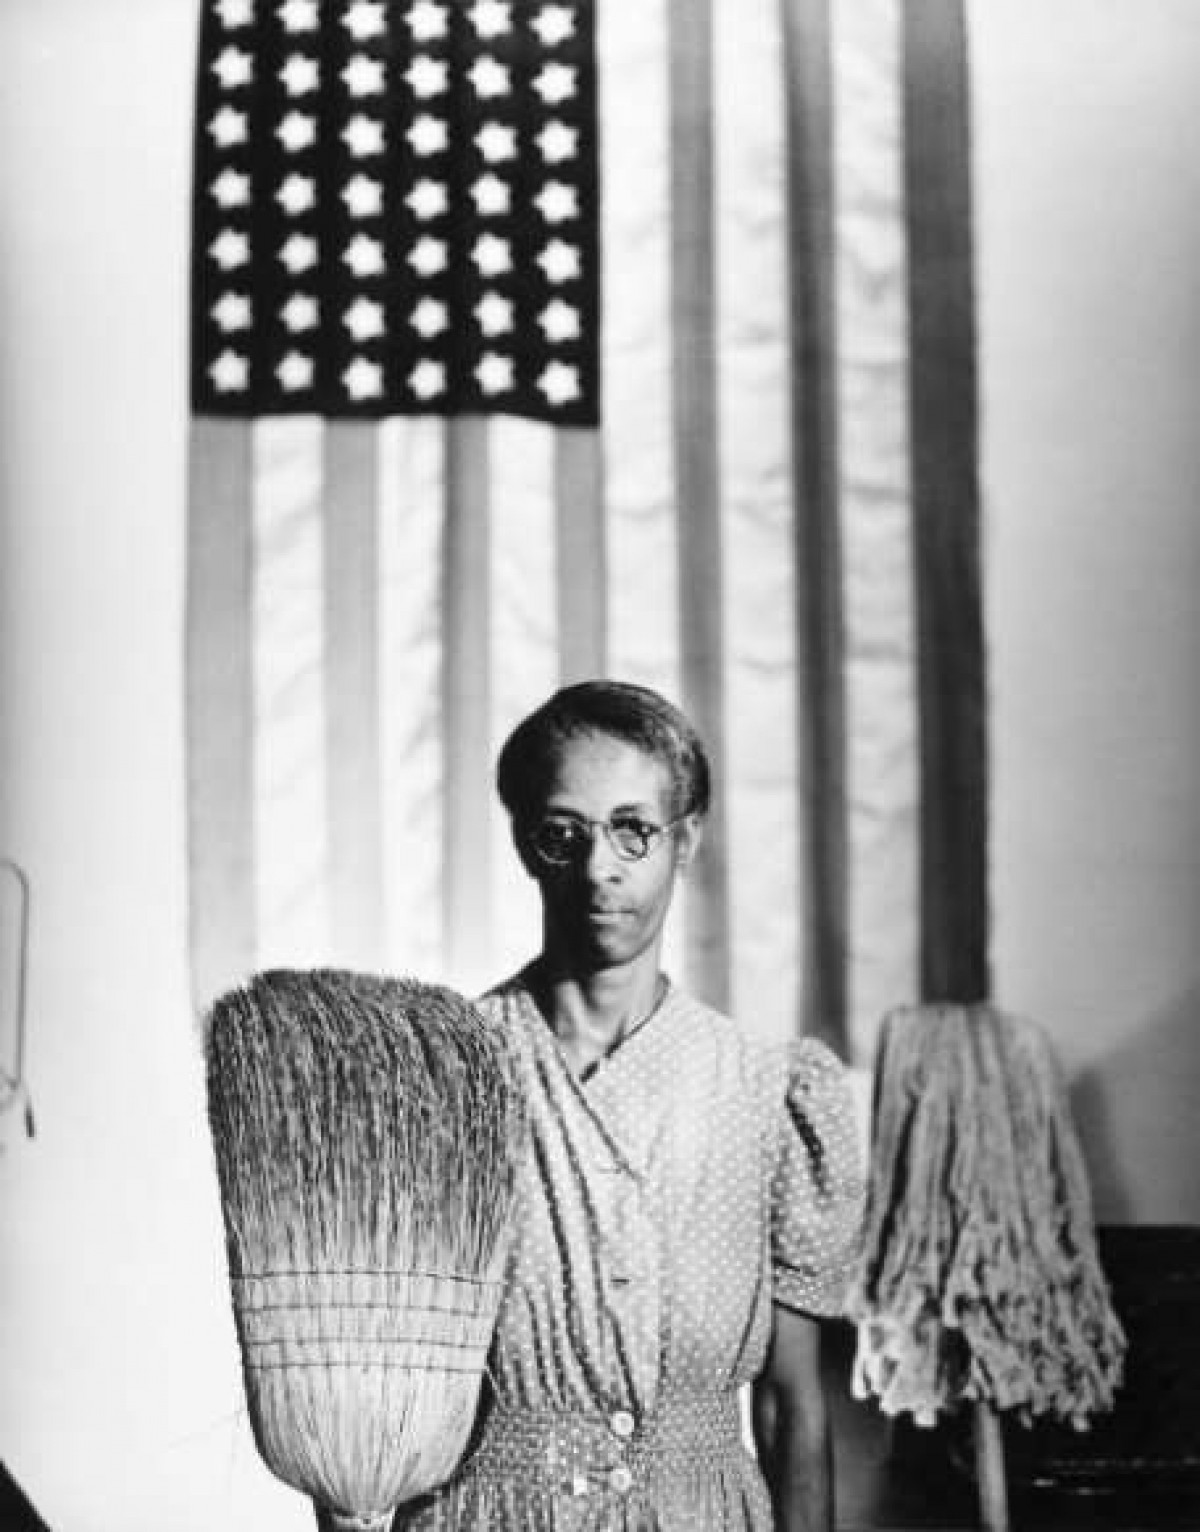 Gordon Parks là một phóng viên ảnh người Mỹ gốc Phi nổi tiếng. Những bức ảnh ông Parks chụp đã mang lại cái nhìn chân thực nhất về người Mỹ da màu vào thế kỷ 20. Bức ảnh này ông Parks chụp đồng nghiệp tại Cục Quản lý An ninh Nông trại ở thủ đô Washington, với tạo dáng giống với bức tranh Grant Wood nổi tiếng 